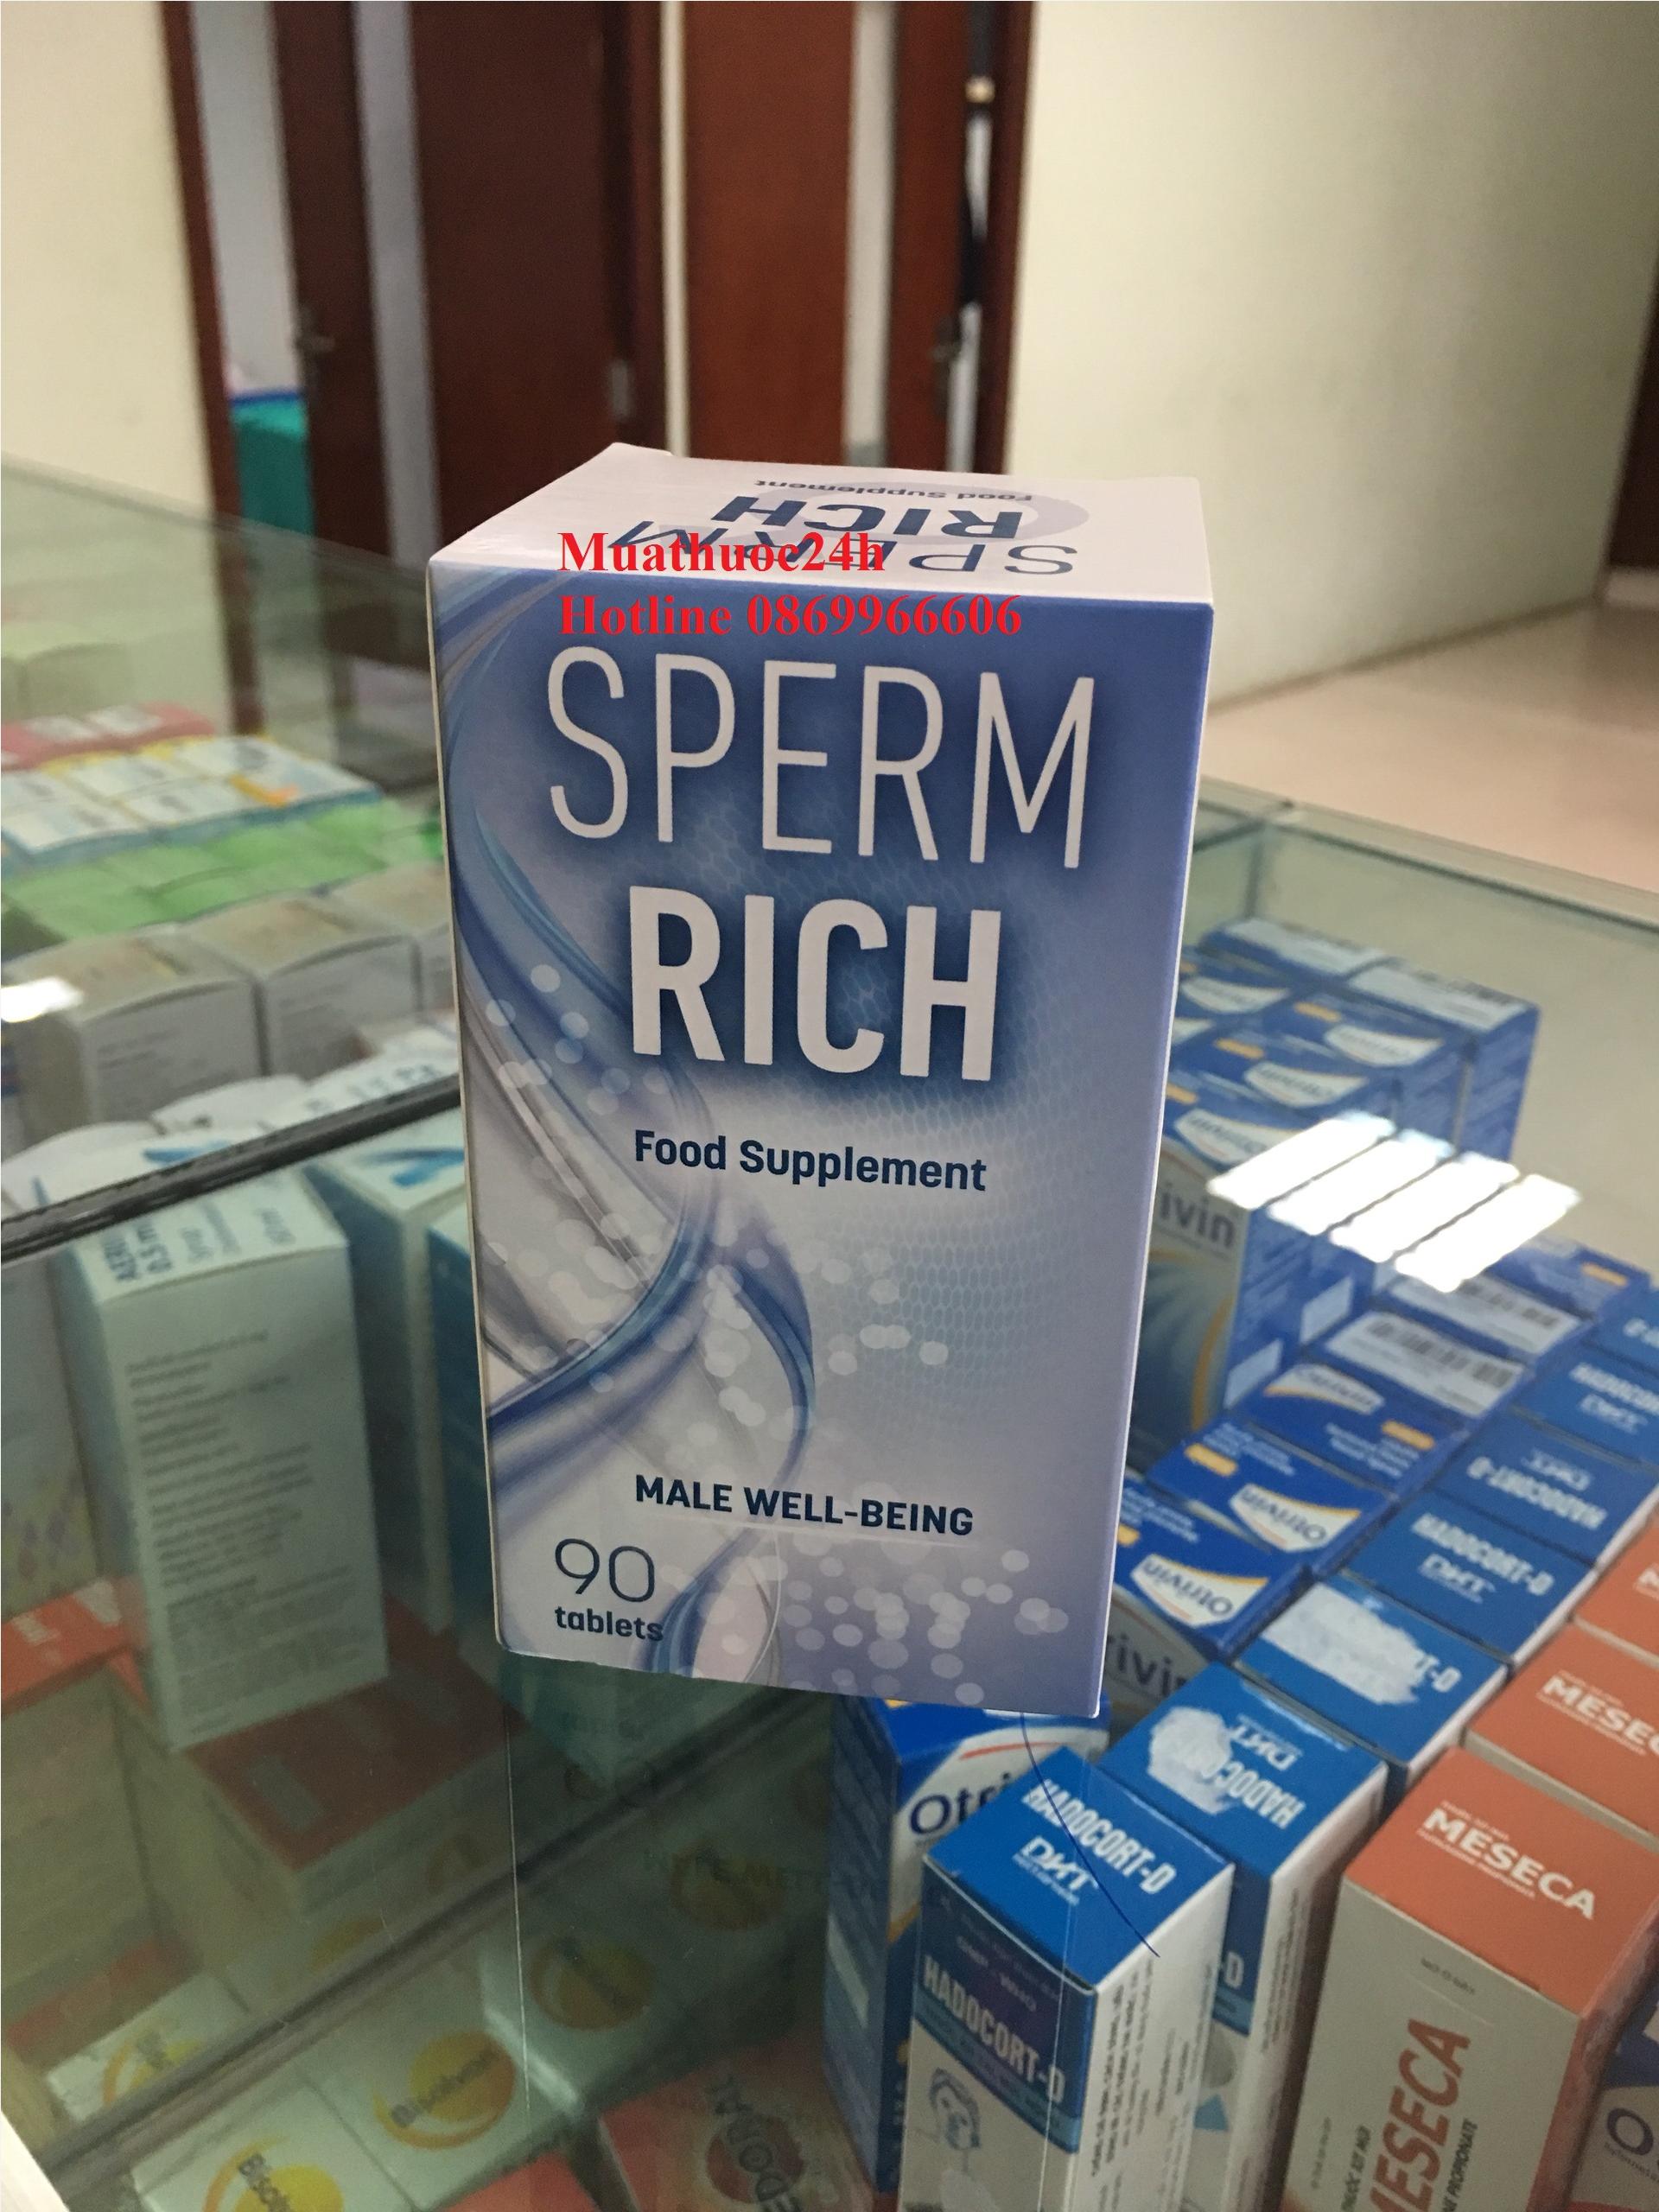 Thuốc Spermrich giá bao nhiêu, mua ở đâu?